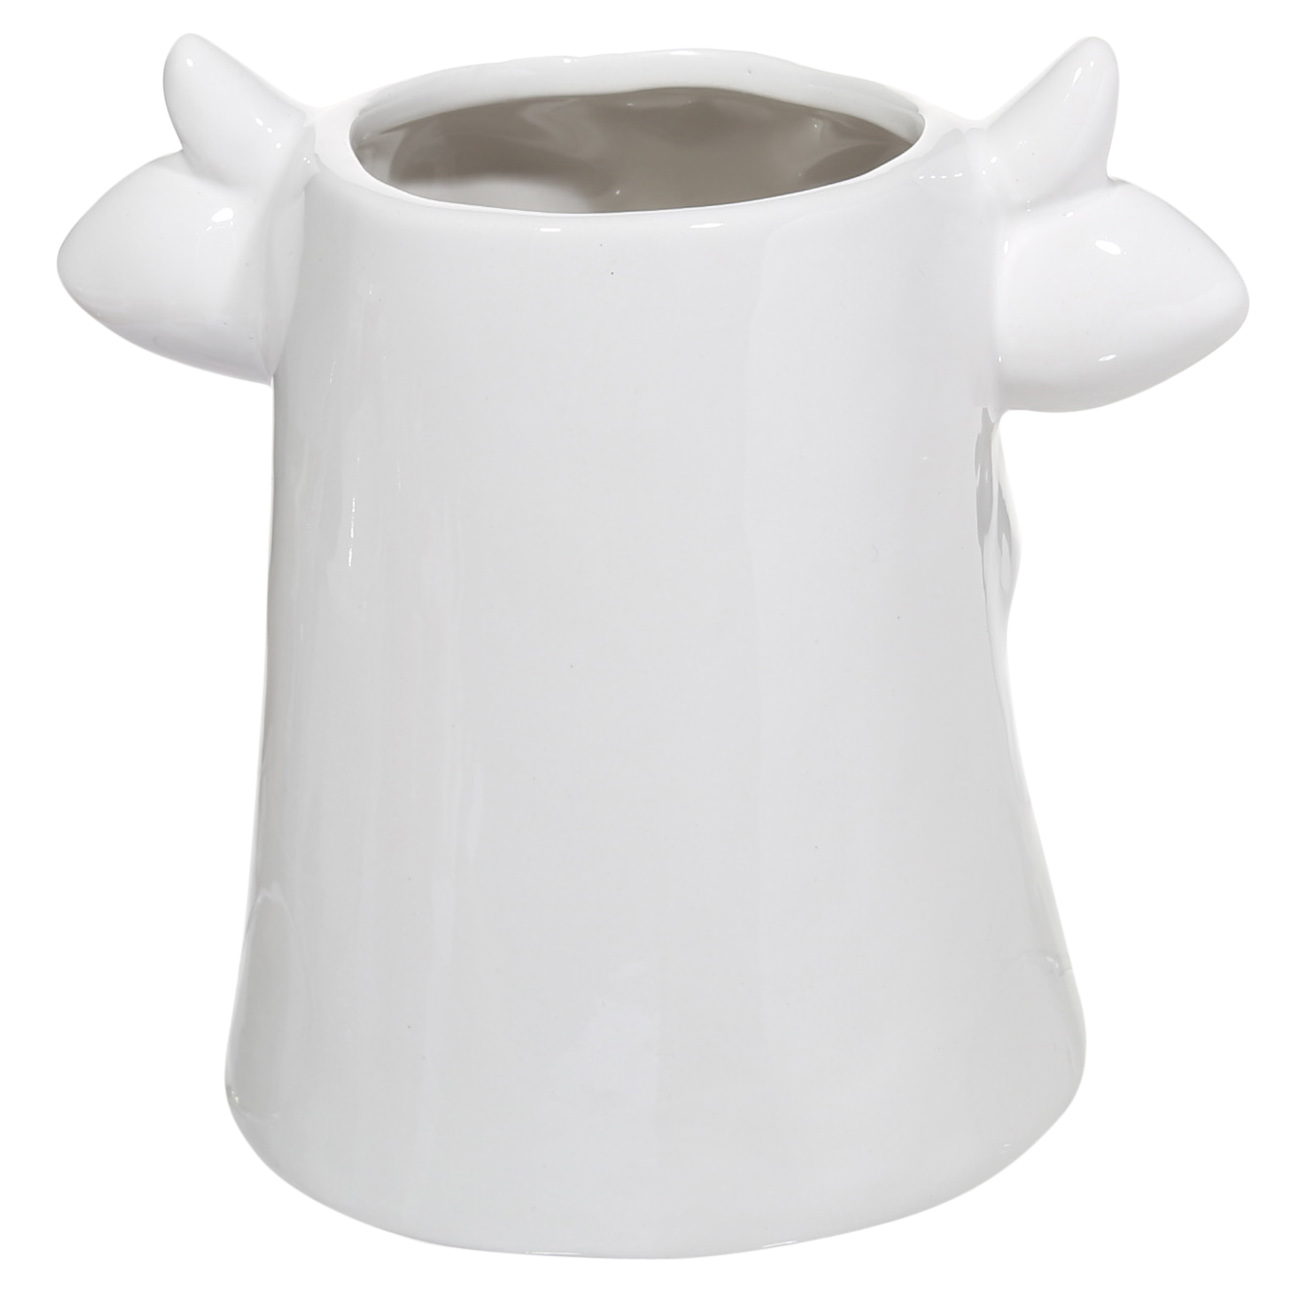 Подставка для кухонных принадлежностей, 15 см, керамика, белая, Корова, Polar bull изображение № 3